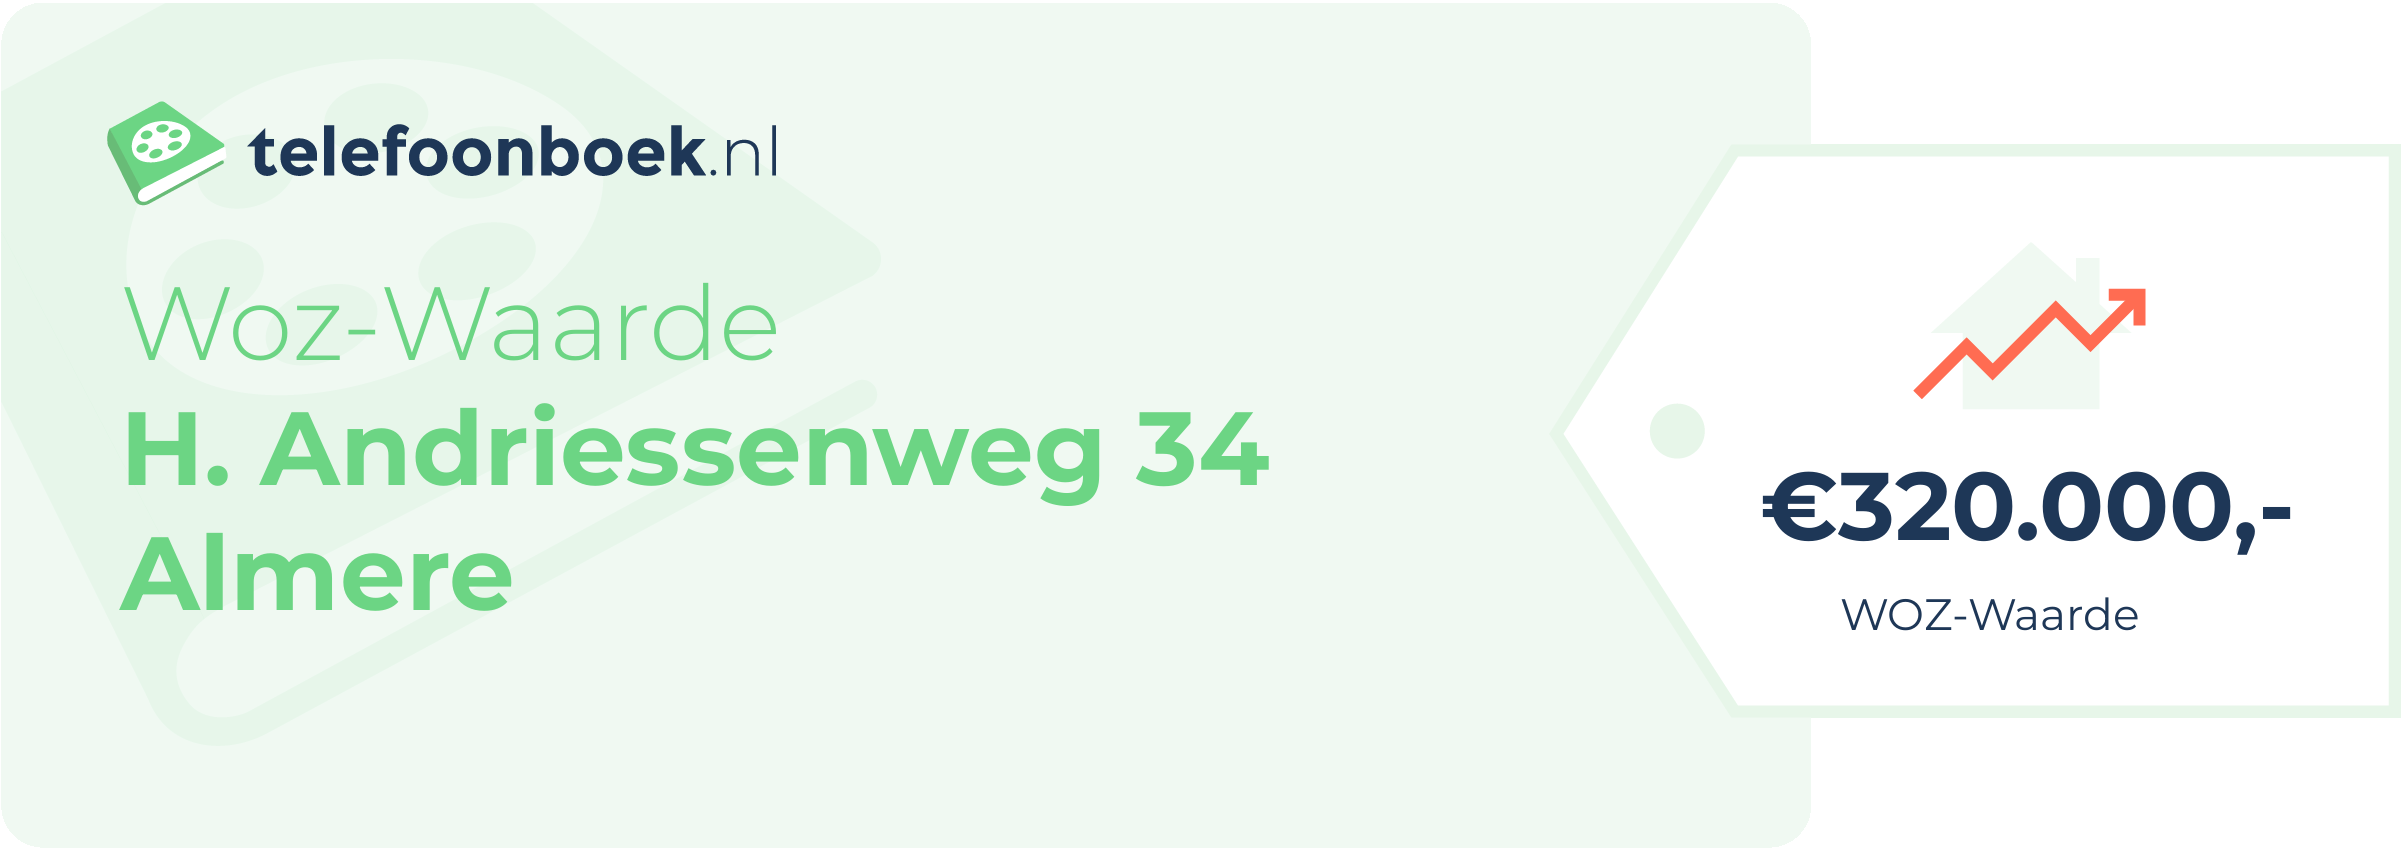 WOZ-waarde H. Andriessenweg 34 Almere